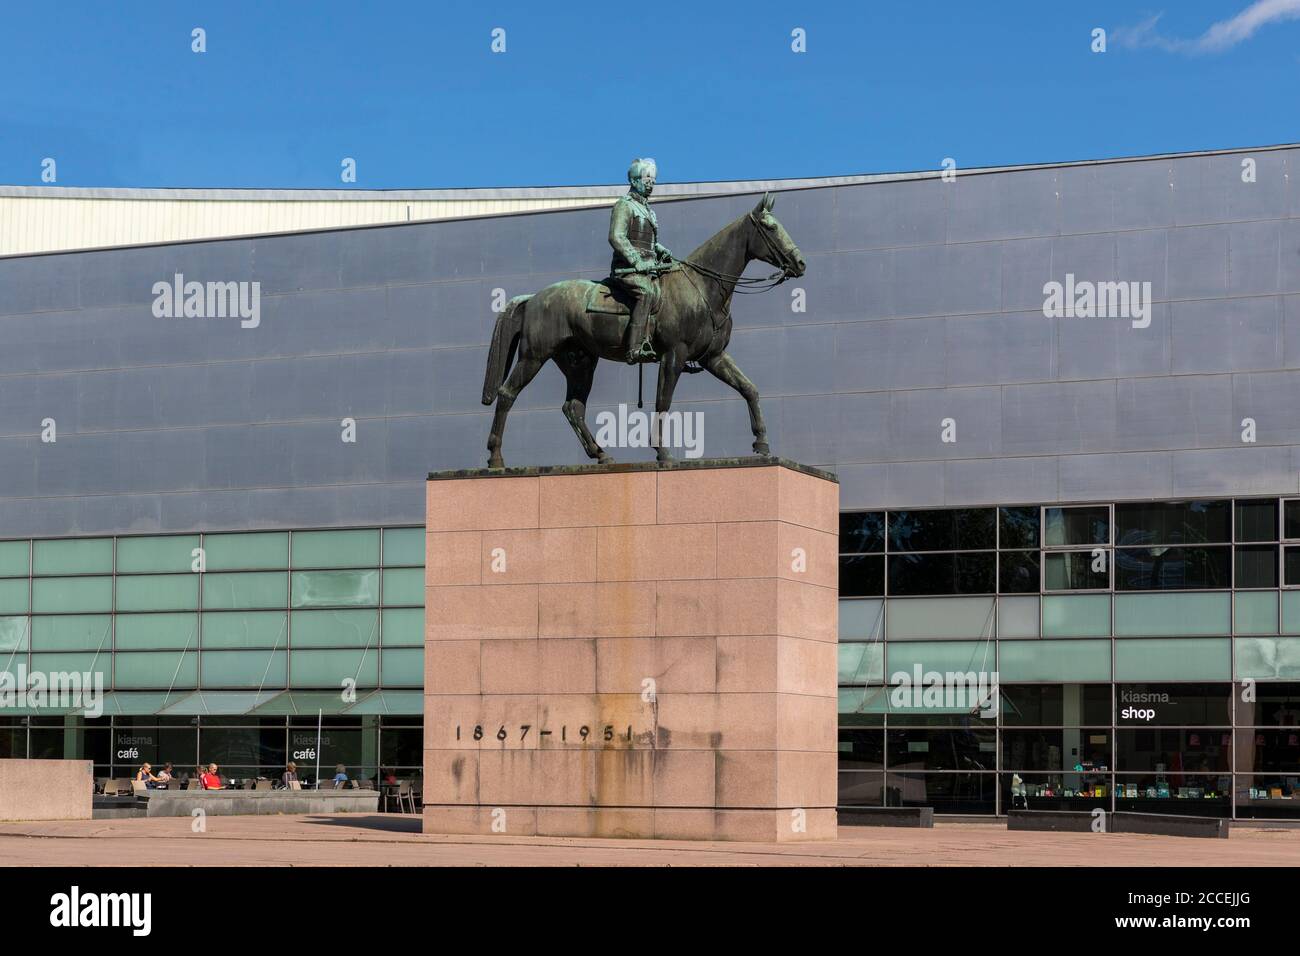 Baron Mannerheim war ein finnischer Militärführer und Staatsmann. Später wurde er Präsident von Finnland. Seine Statue befindet sich in der Innenstadt von Helsinki. Stockfoto